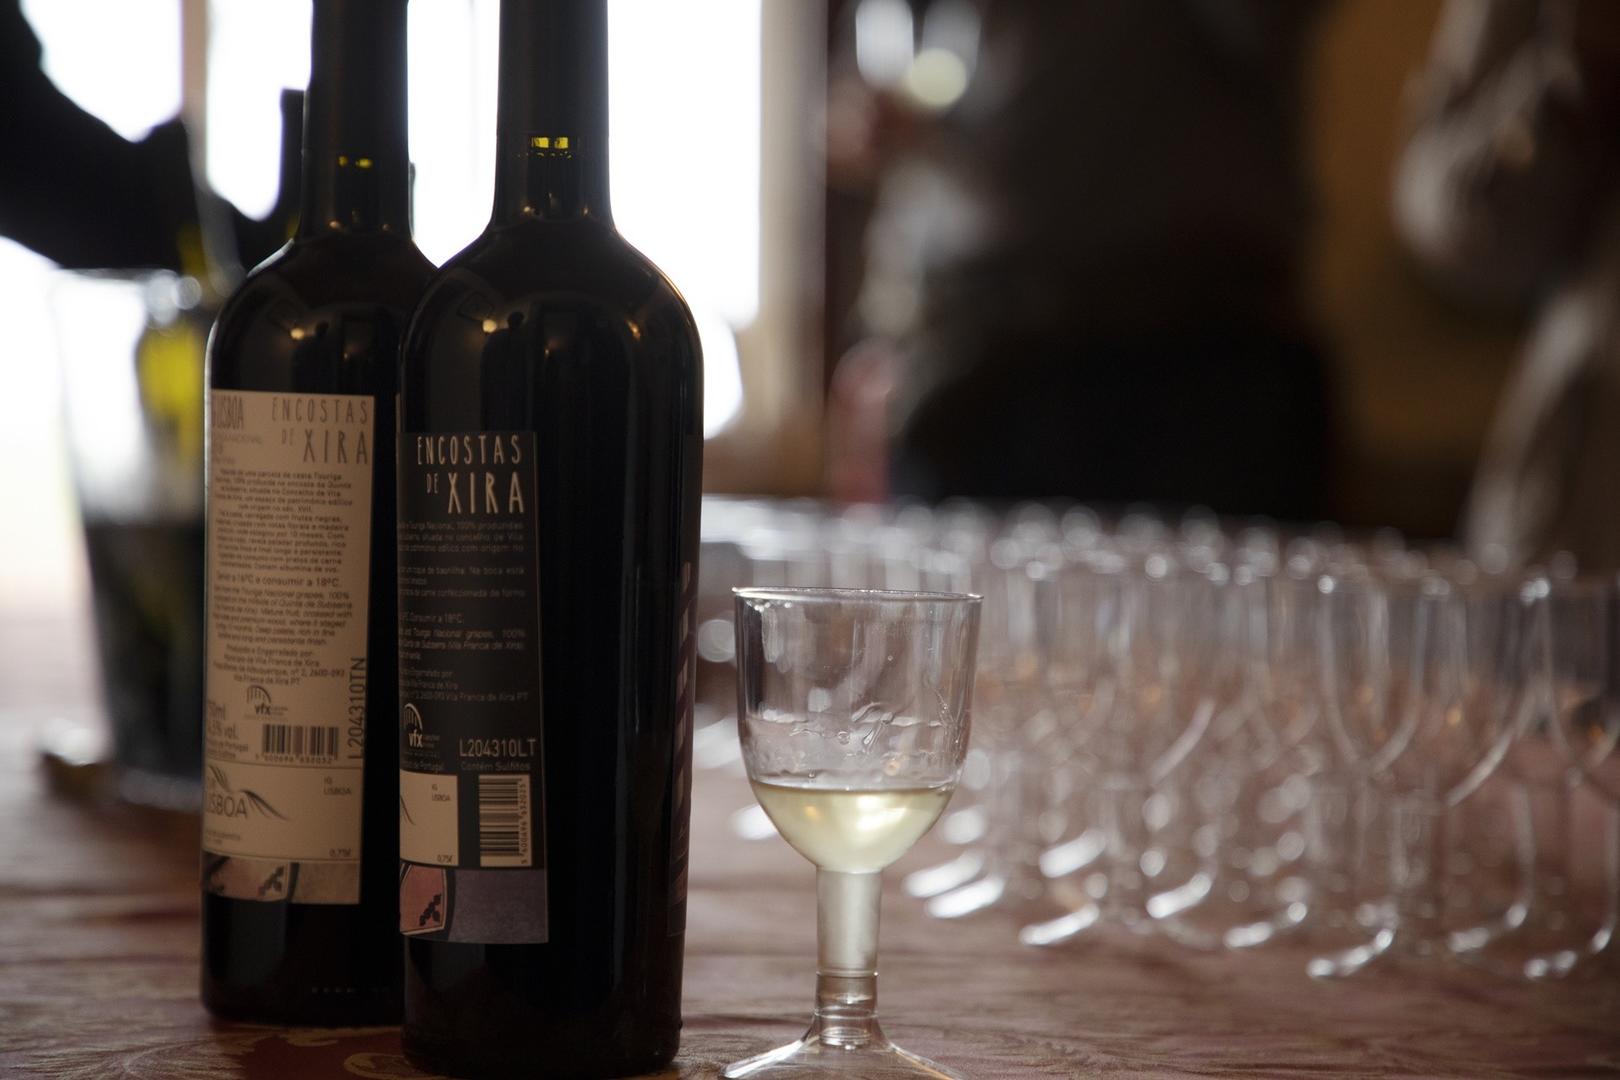 Morgado Lusitano: “Prova de vinhos – Encostas de Xira”; “Batismos Equestres”